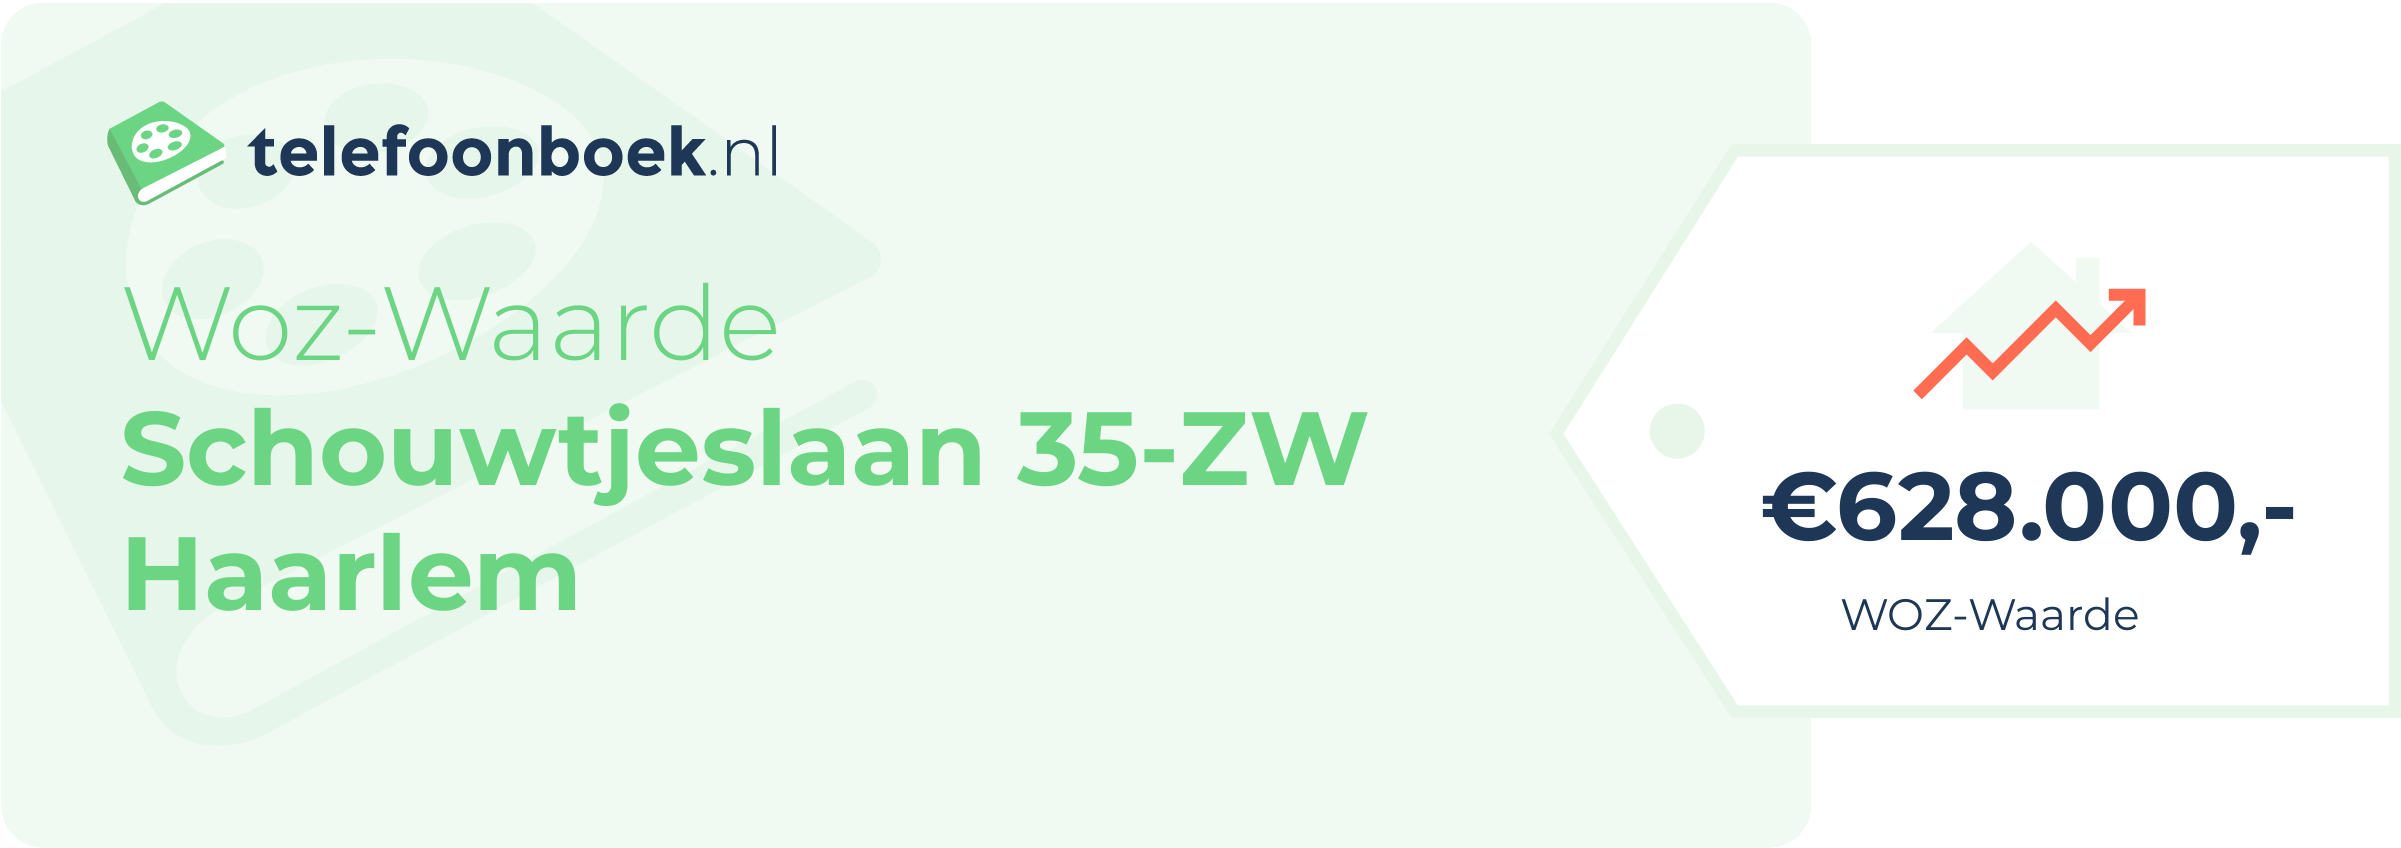 WOZ-waarde Schouwtjeslaan 35-ZW Haarlem